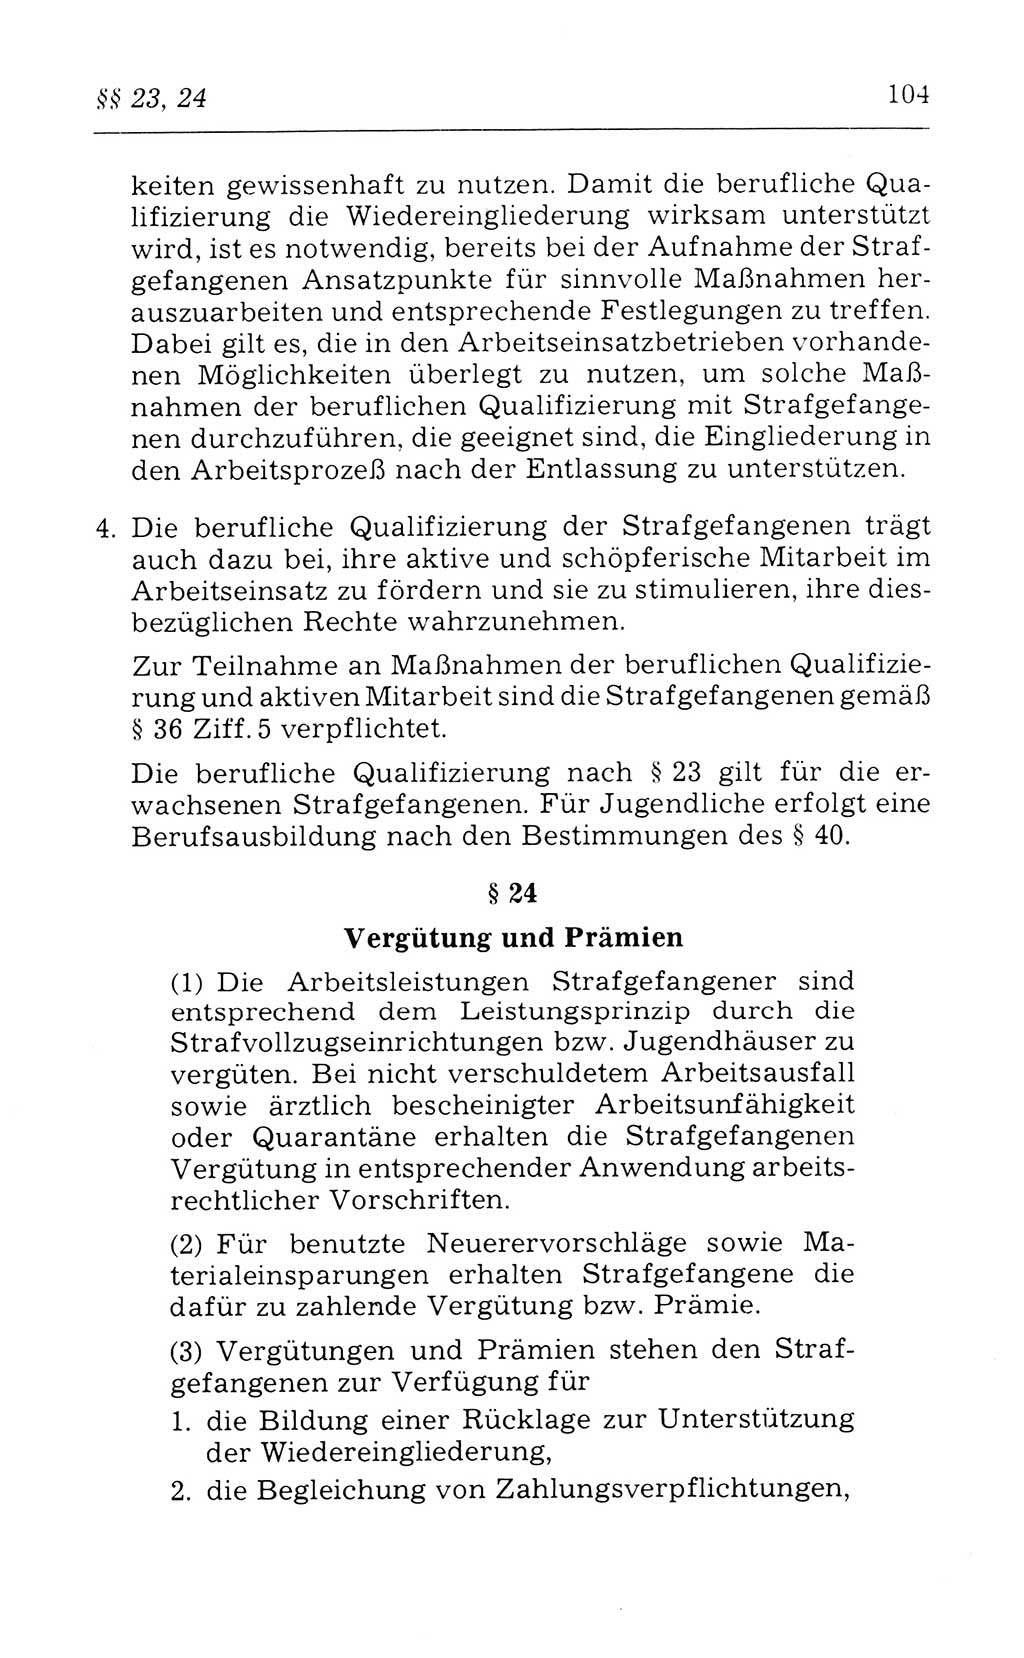 Kommentar zum Strafvollzugsgesetz [(StVG) Deutsche Demokratische Republik (DDR)] 1980, Seite 104 (Komm. StVG DDR 1980, S. 104)